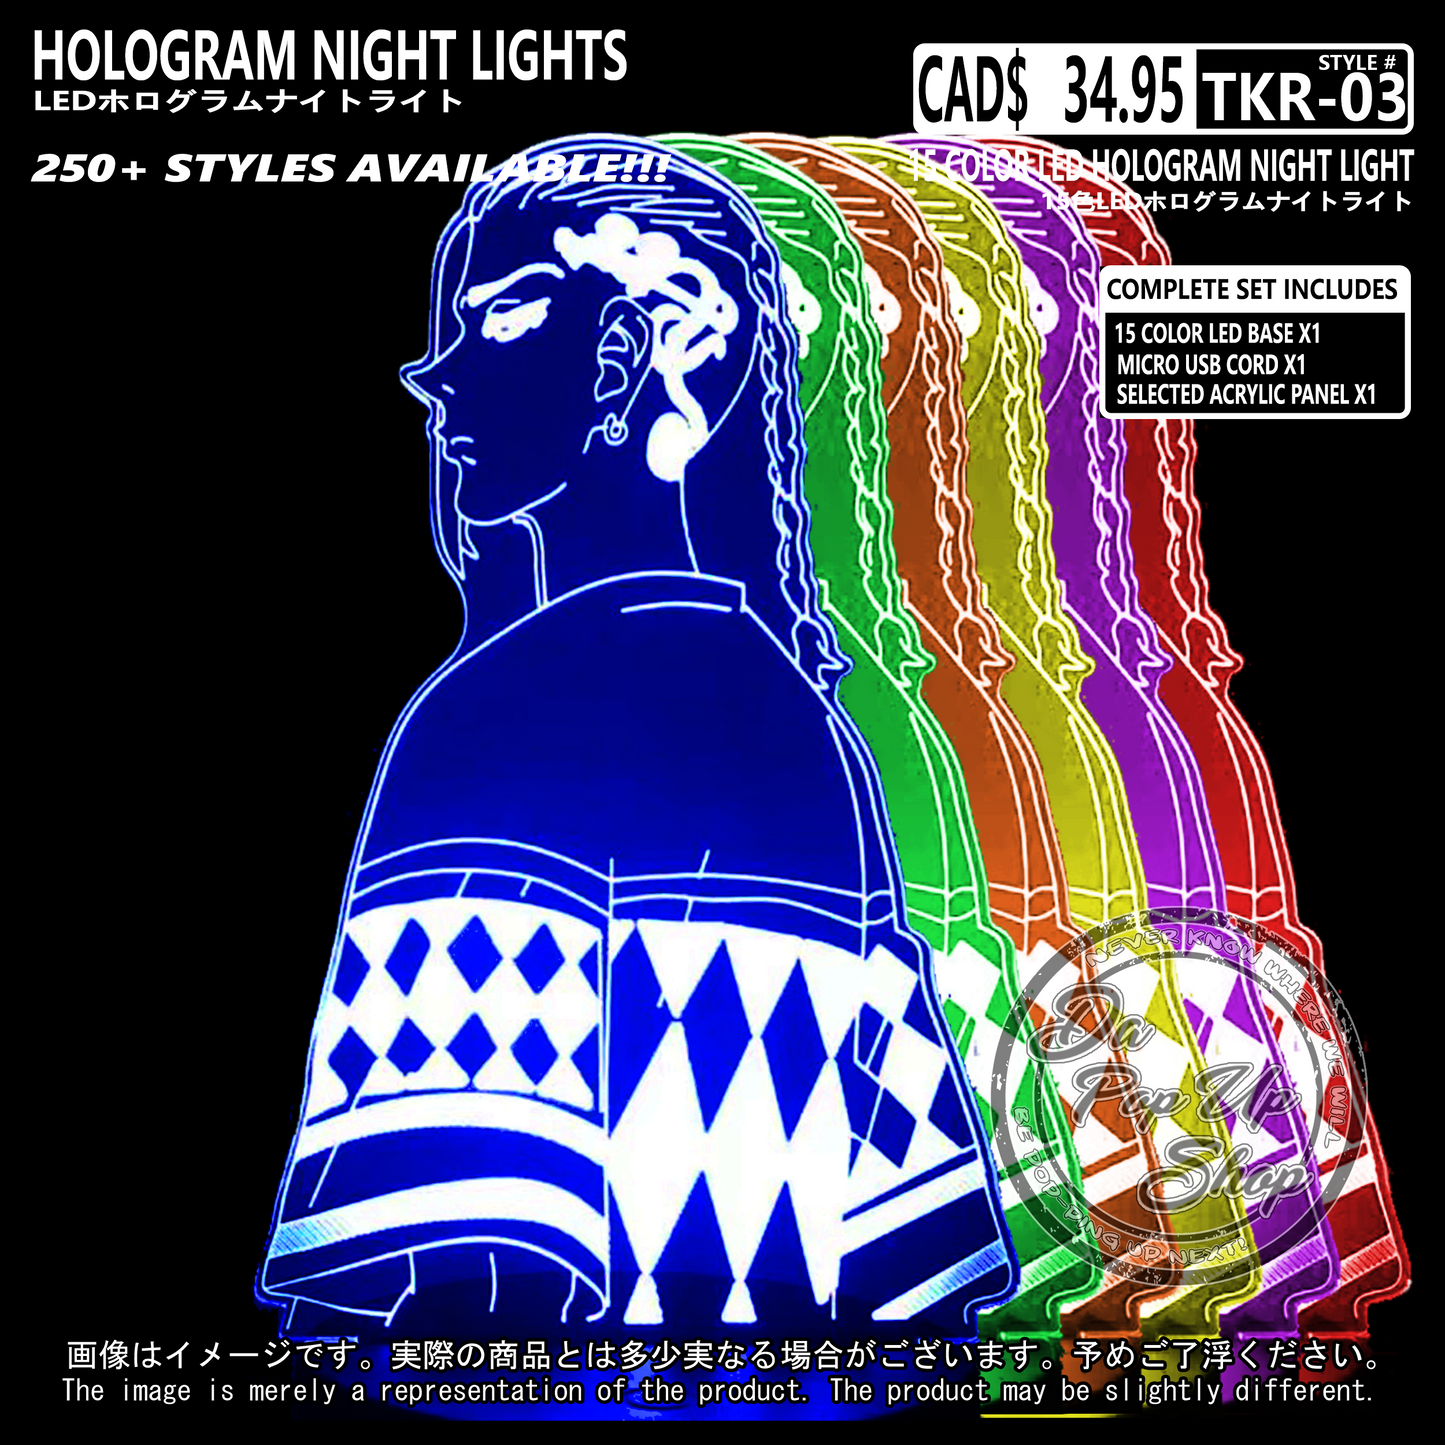 (TKR-03) Tokyo Revenger Hologram LED Night Light